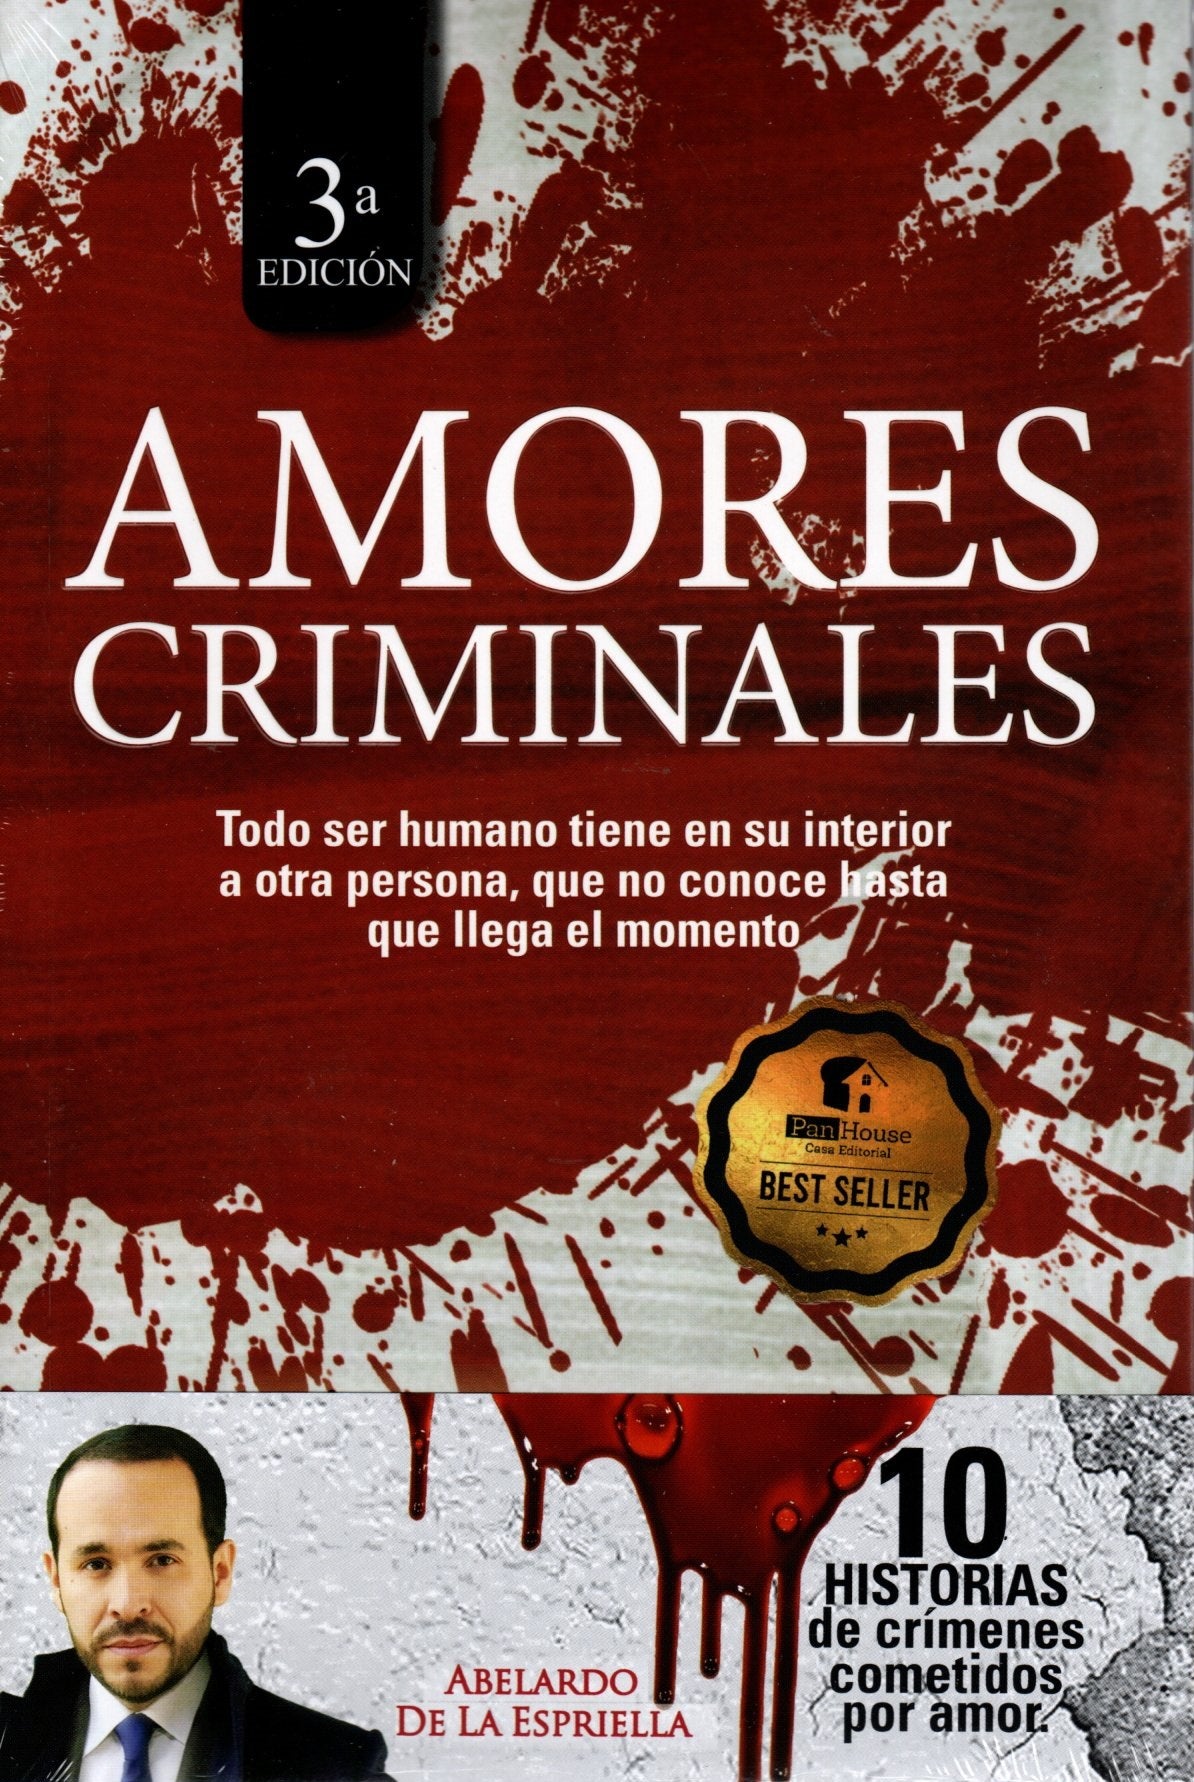 Libro Abelardo De La Espriella - Amores Criminales